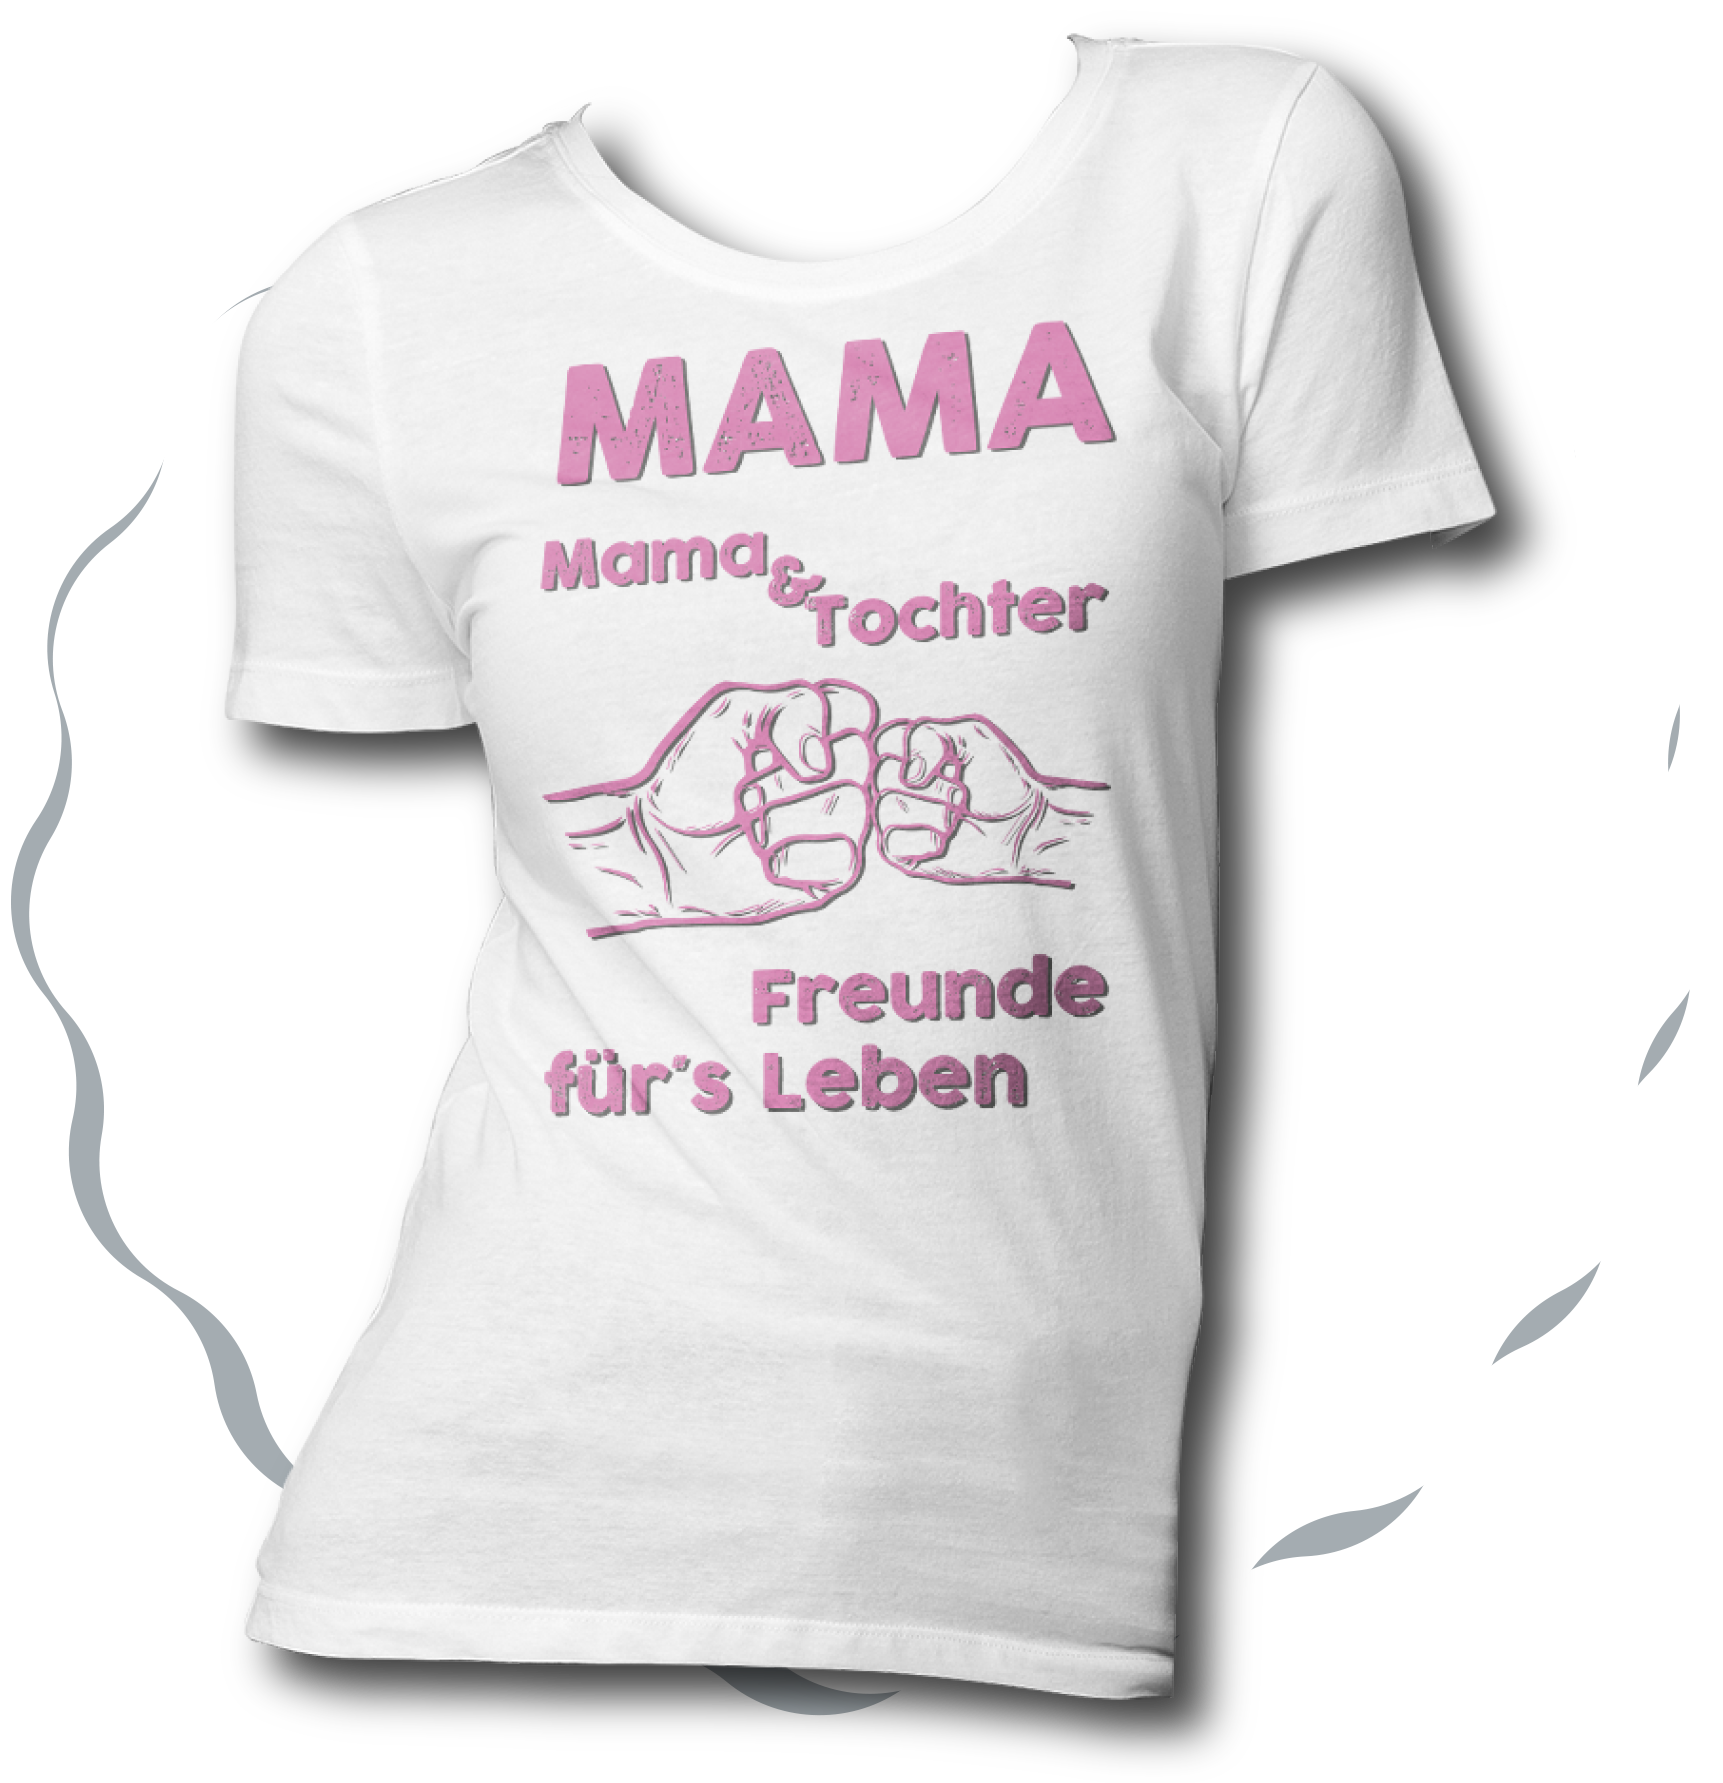 mama_und_tochter_fuers_leben_w